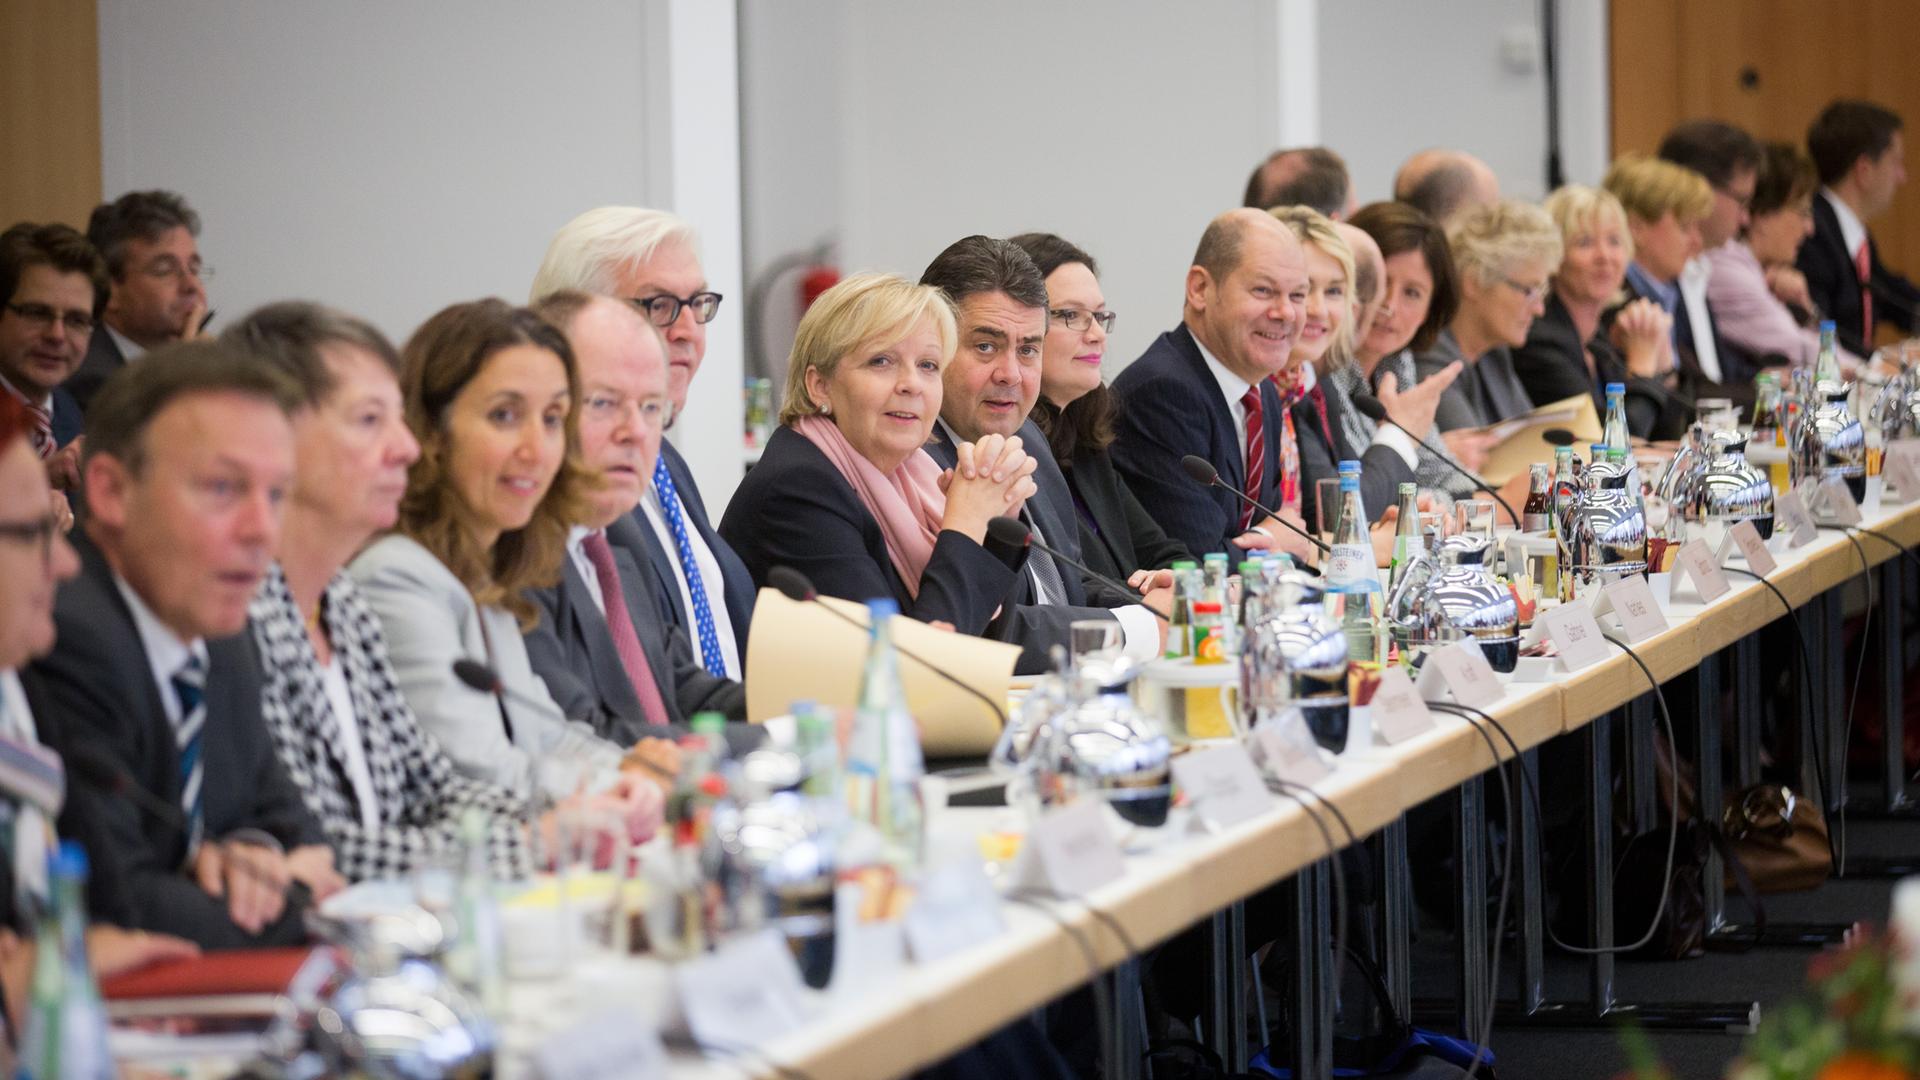 Die SPD-Delegation sitzt am 23.10.2013 im Konrad Adenauer Haus in Berlin gegenüber den Vertretern der CDU vor Beginn der Koalitionsverhandlungen. Spitzenvertreter von CDU, CSU und SPD treffen sich erstmals zu Koalitionsverhandlungen nach der Bundestagswah